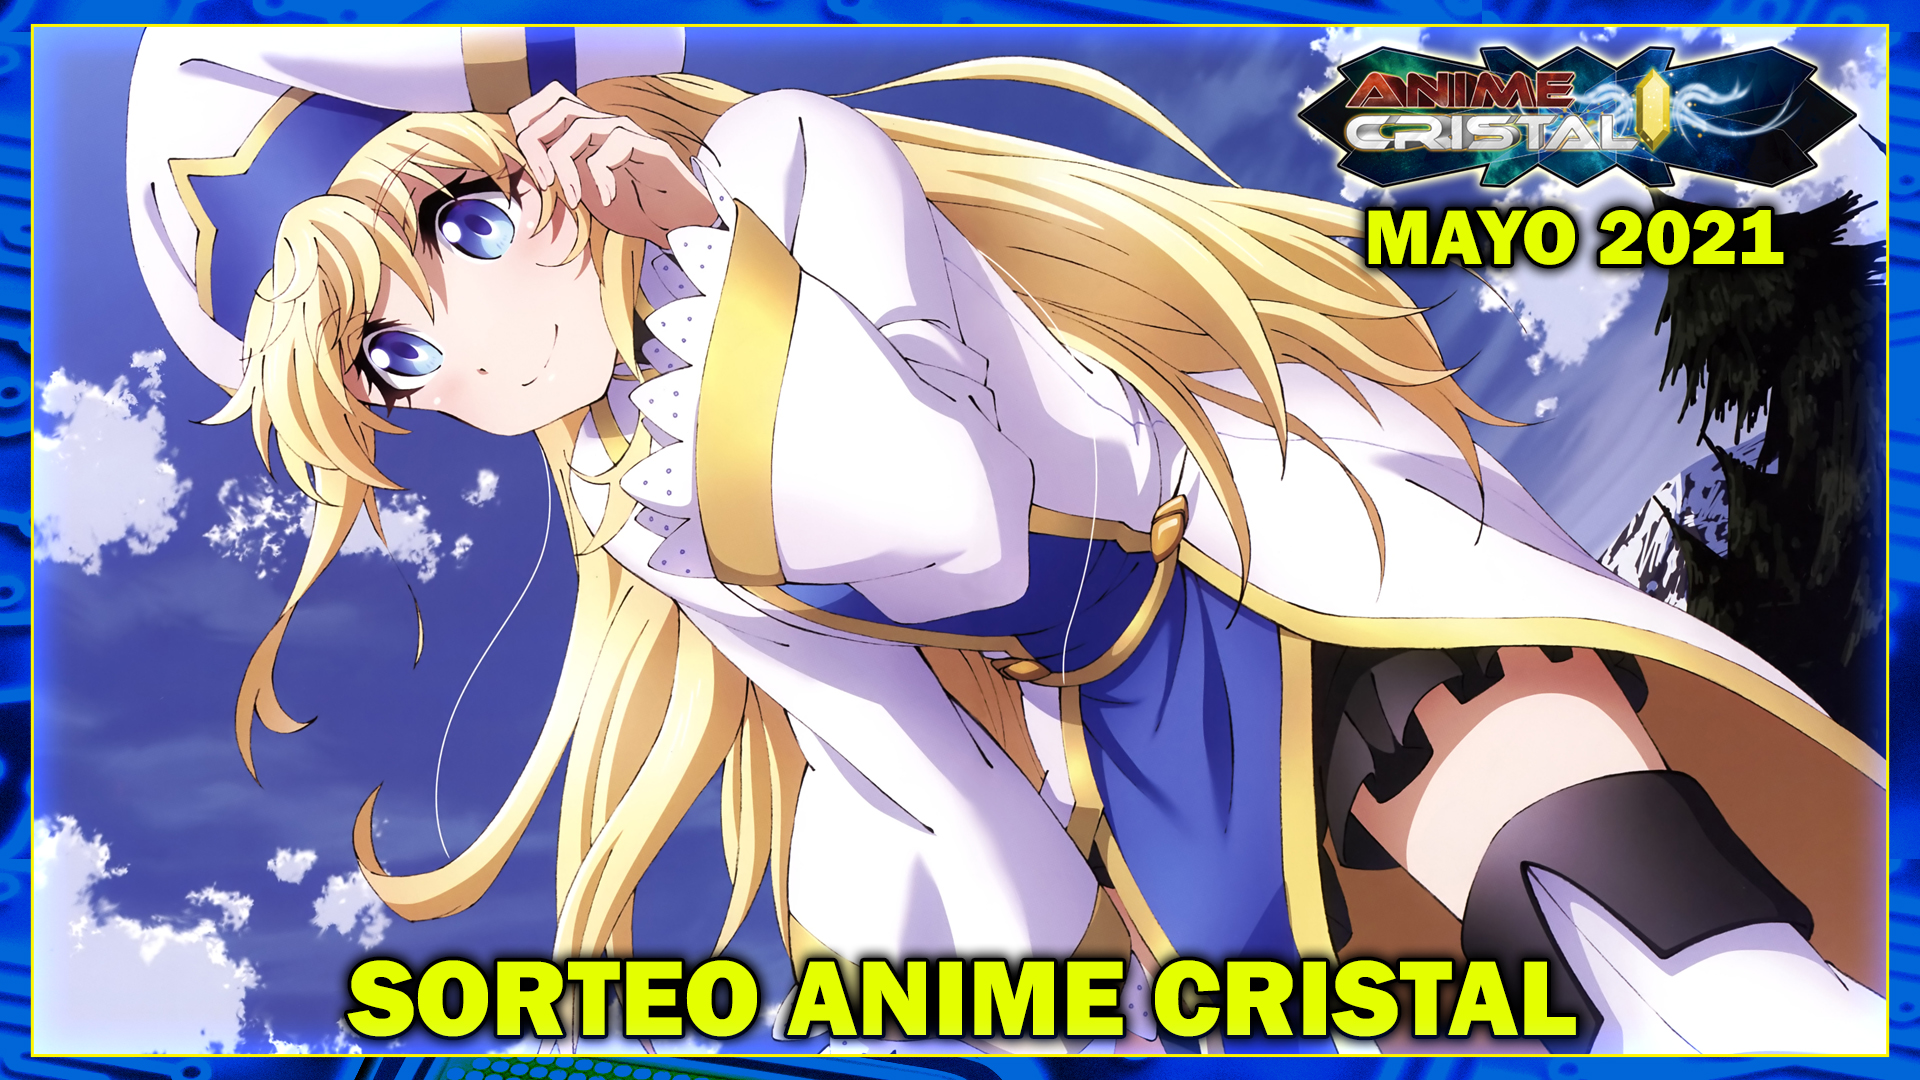 Sorteo Anime Cristal Mayo 2021